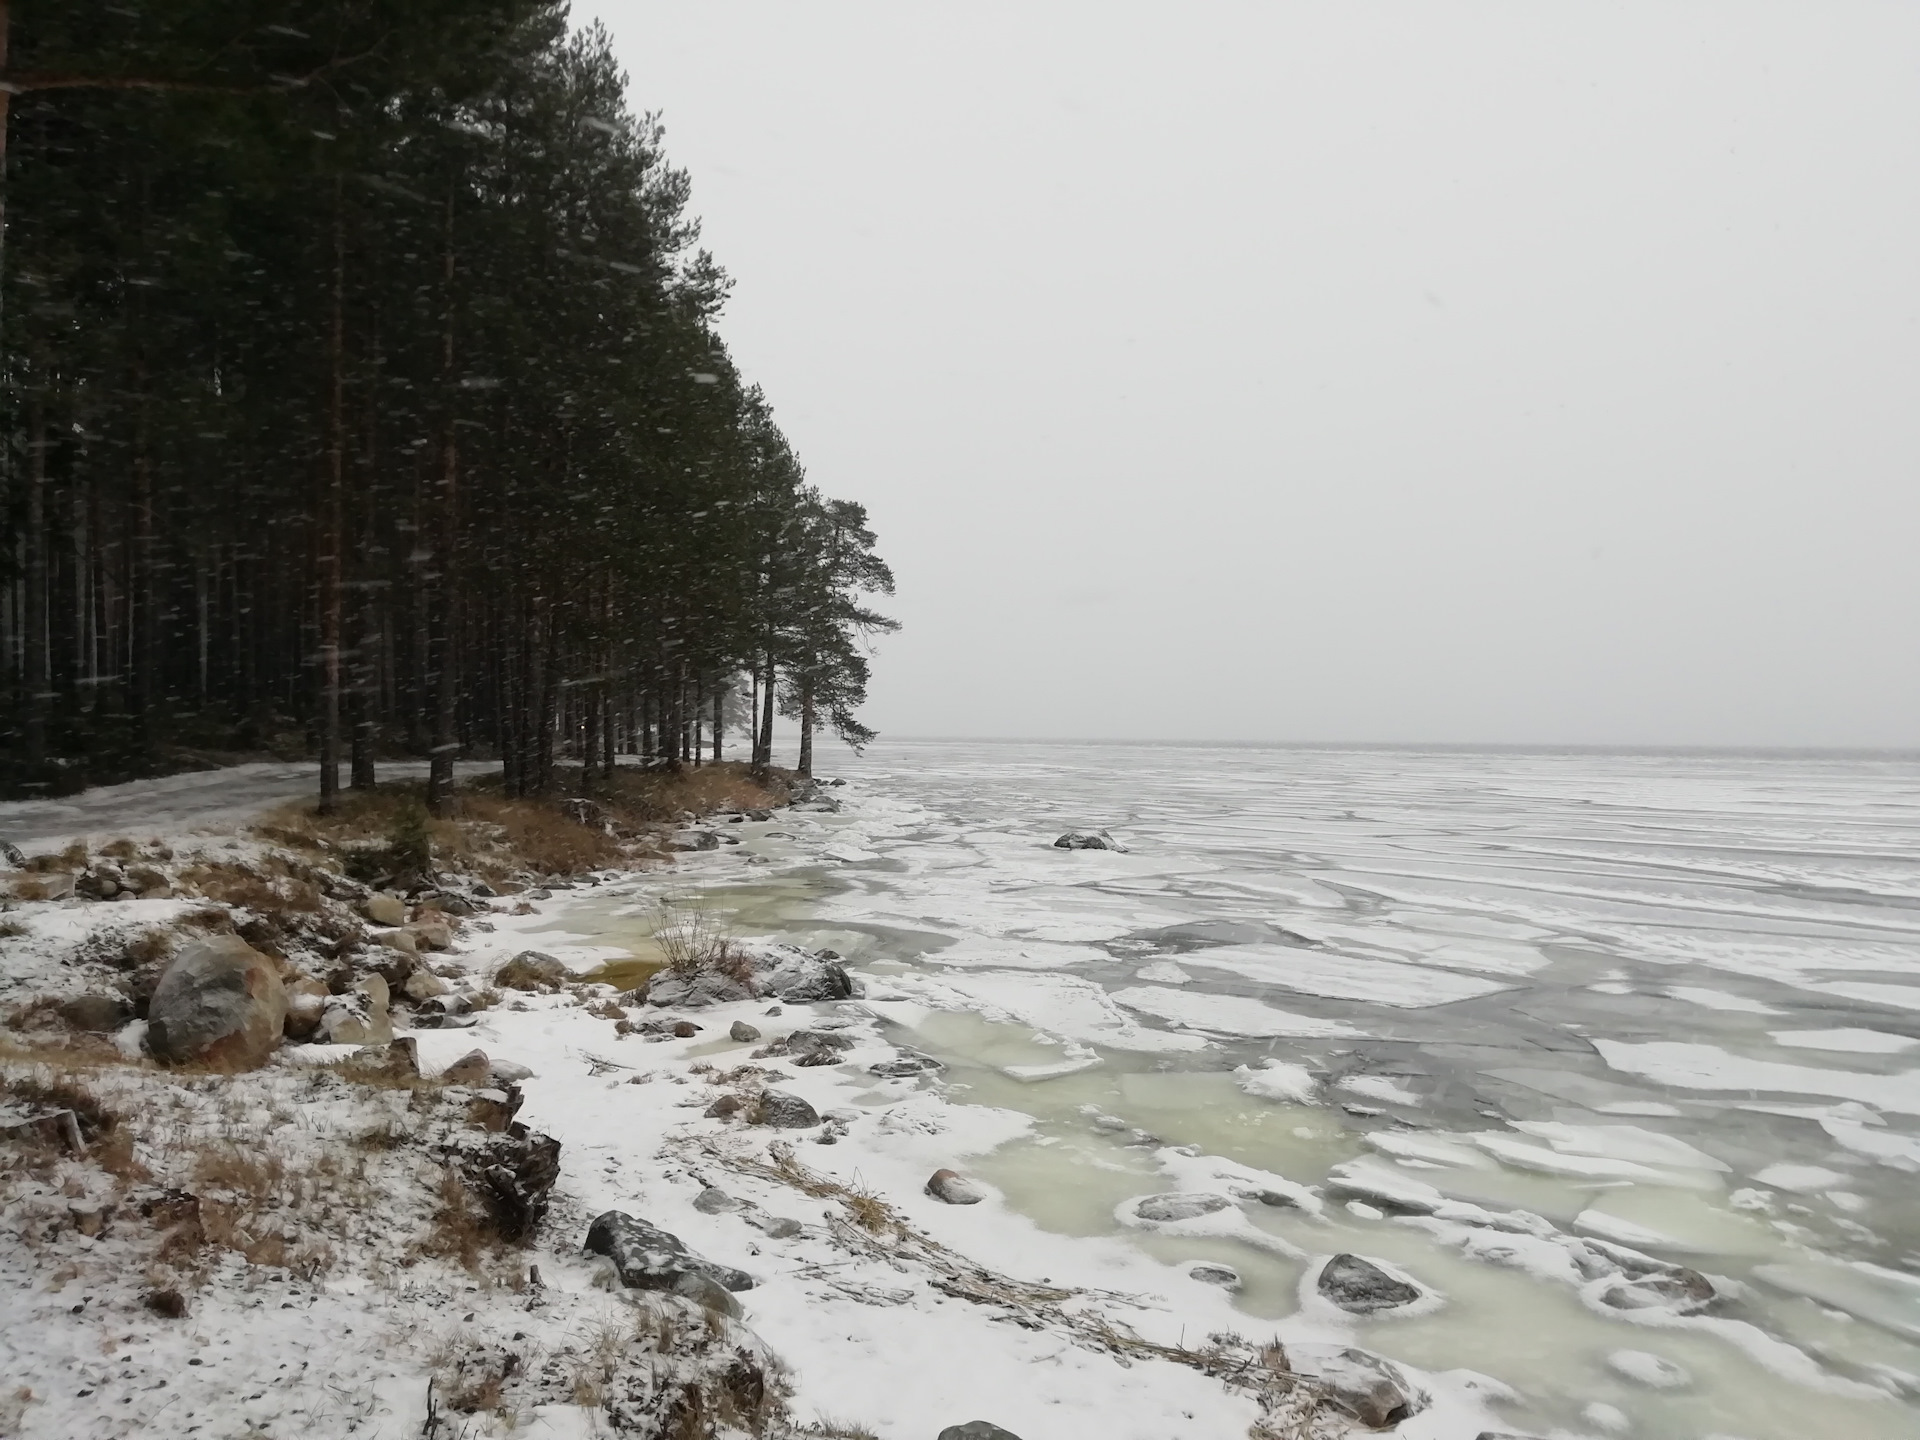 Онежское озеро егэ. Онежское озеро губа чорга. Онежское озеро зимой. Шторм на Онежском озере. Онежское озеро место для отдыха дикарем.